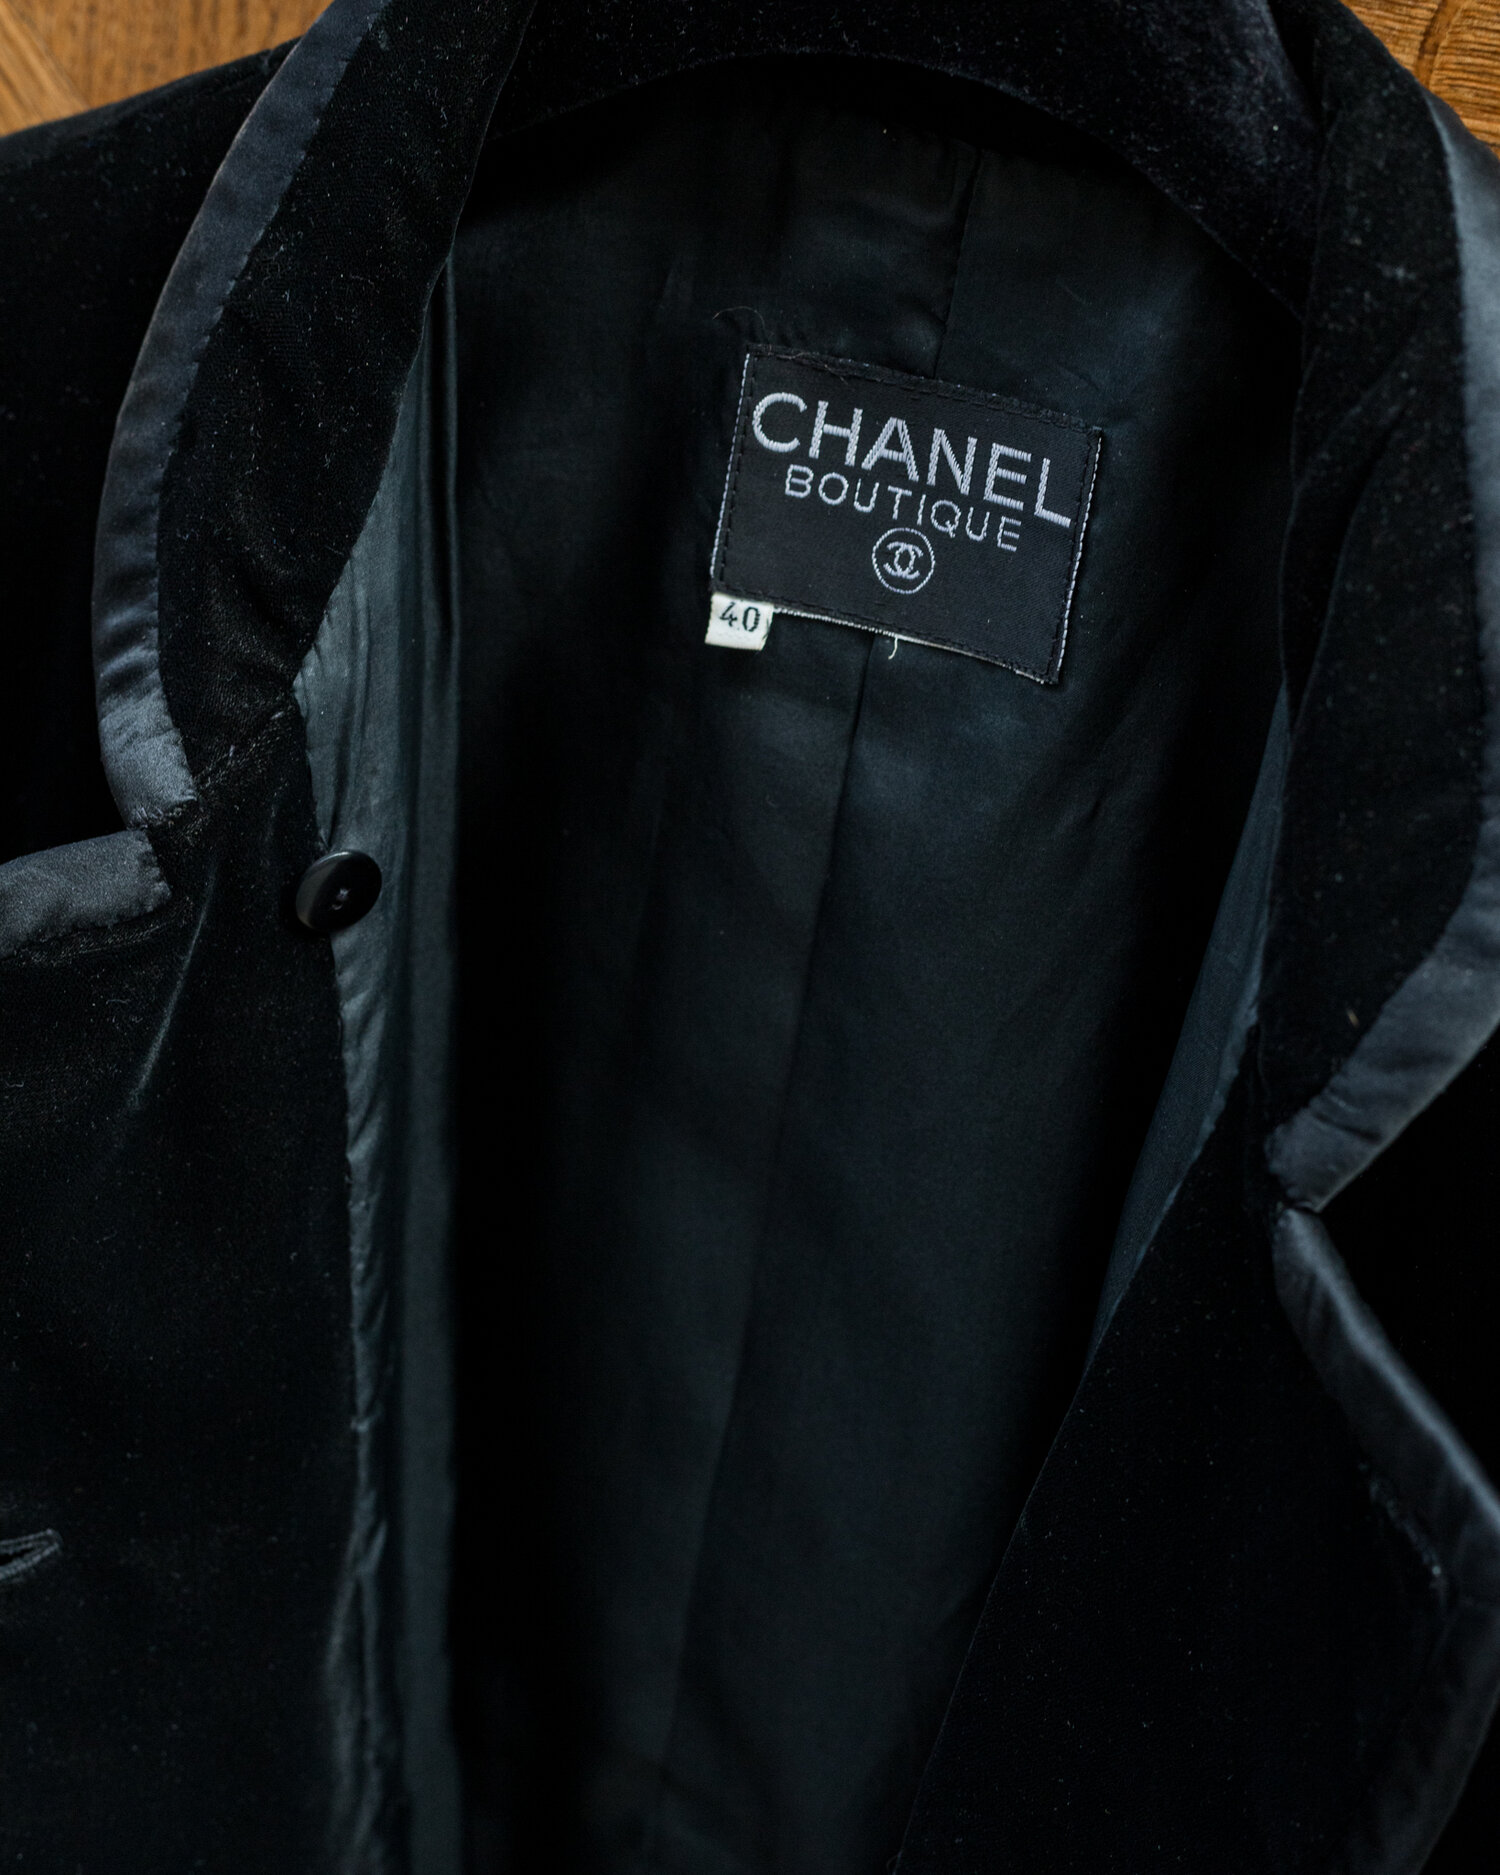 Vintage Chanel Jacket for sale